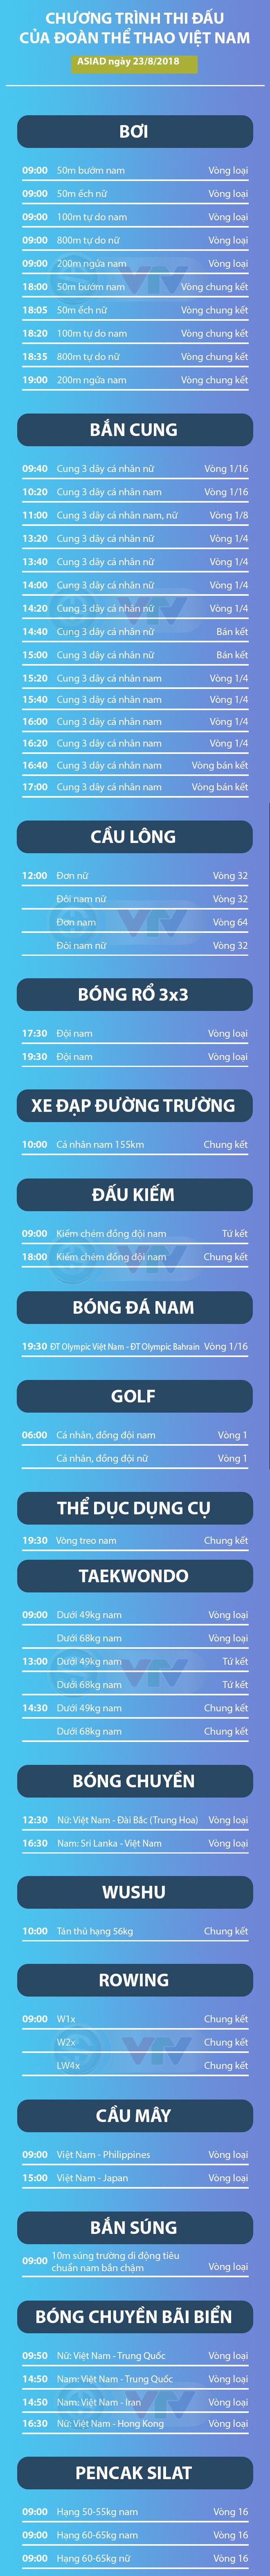 Lịch thi đấu của Đoàn thể thao Việt Nam tại ASIAD 2018 ngày 23/8 - Ảnh 1.